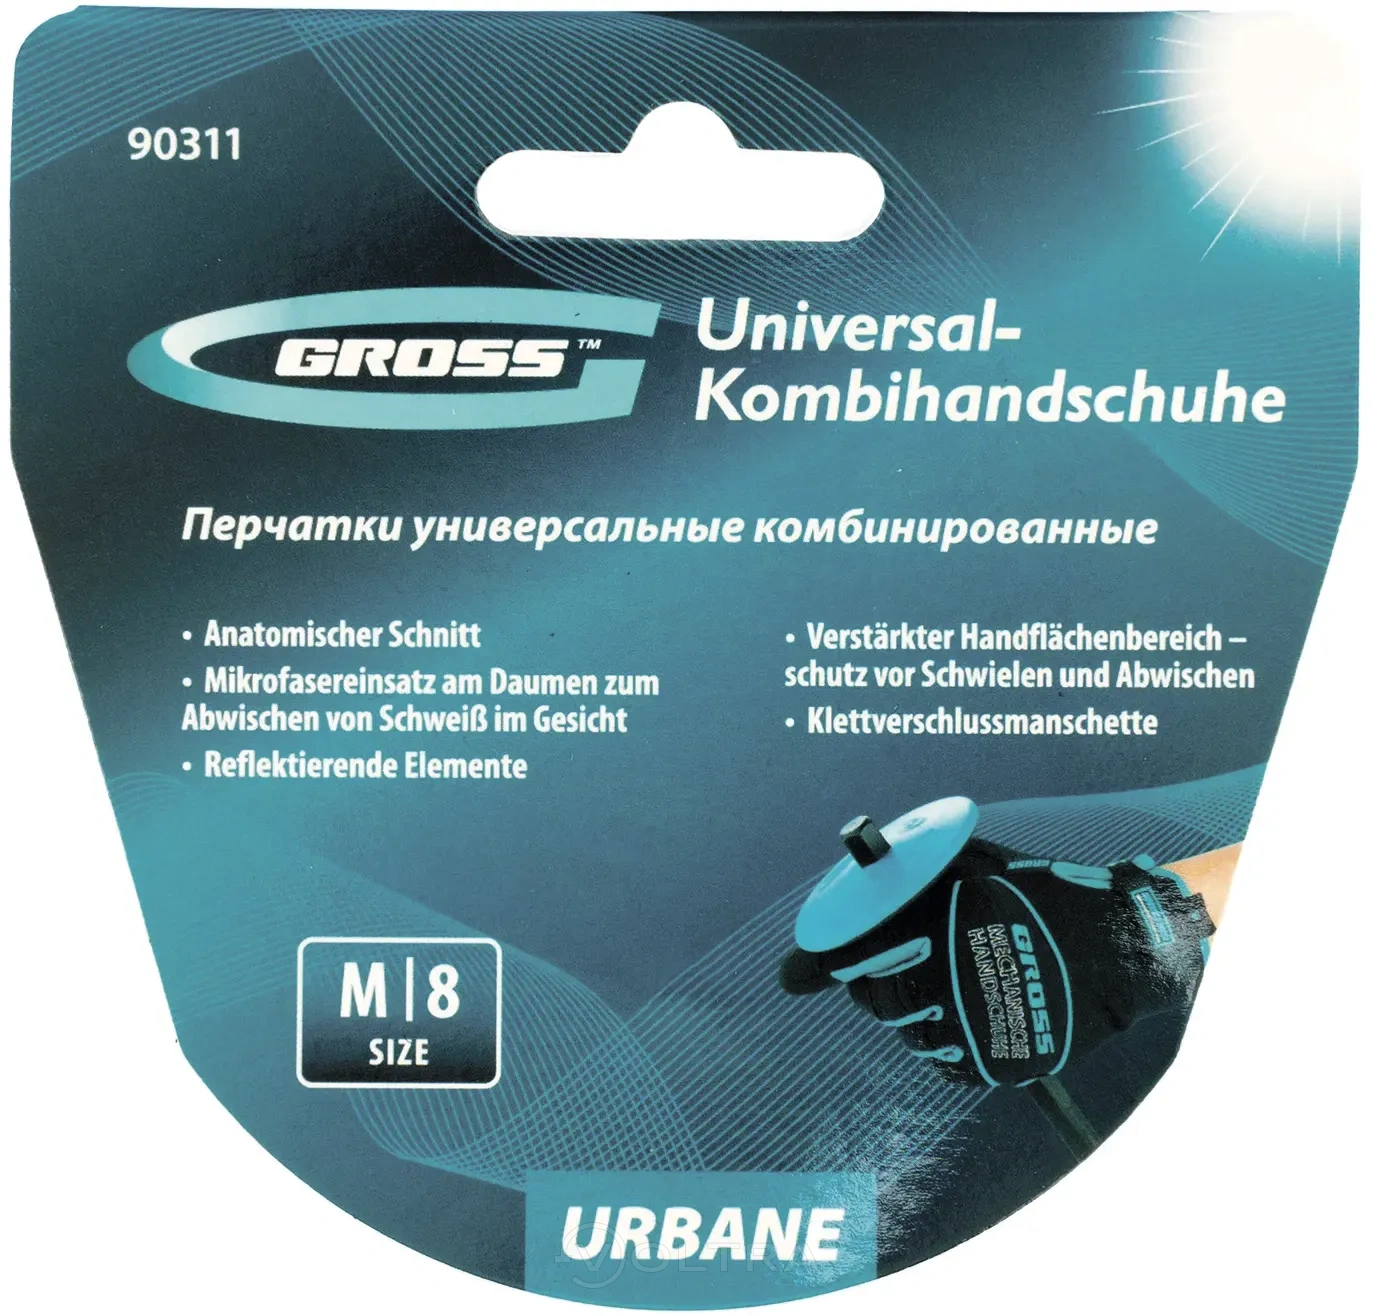 Перчатки универсальные комбинированные URBANE размер M (8) Gross (90311)